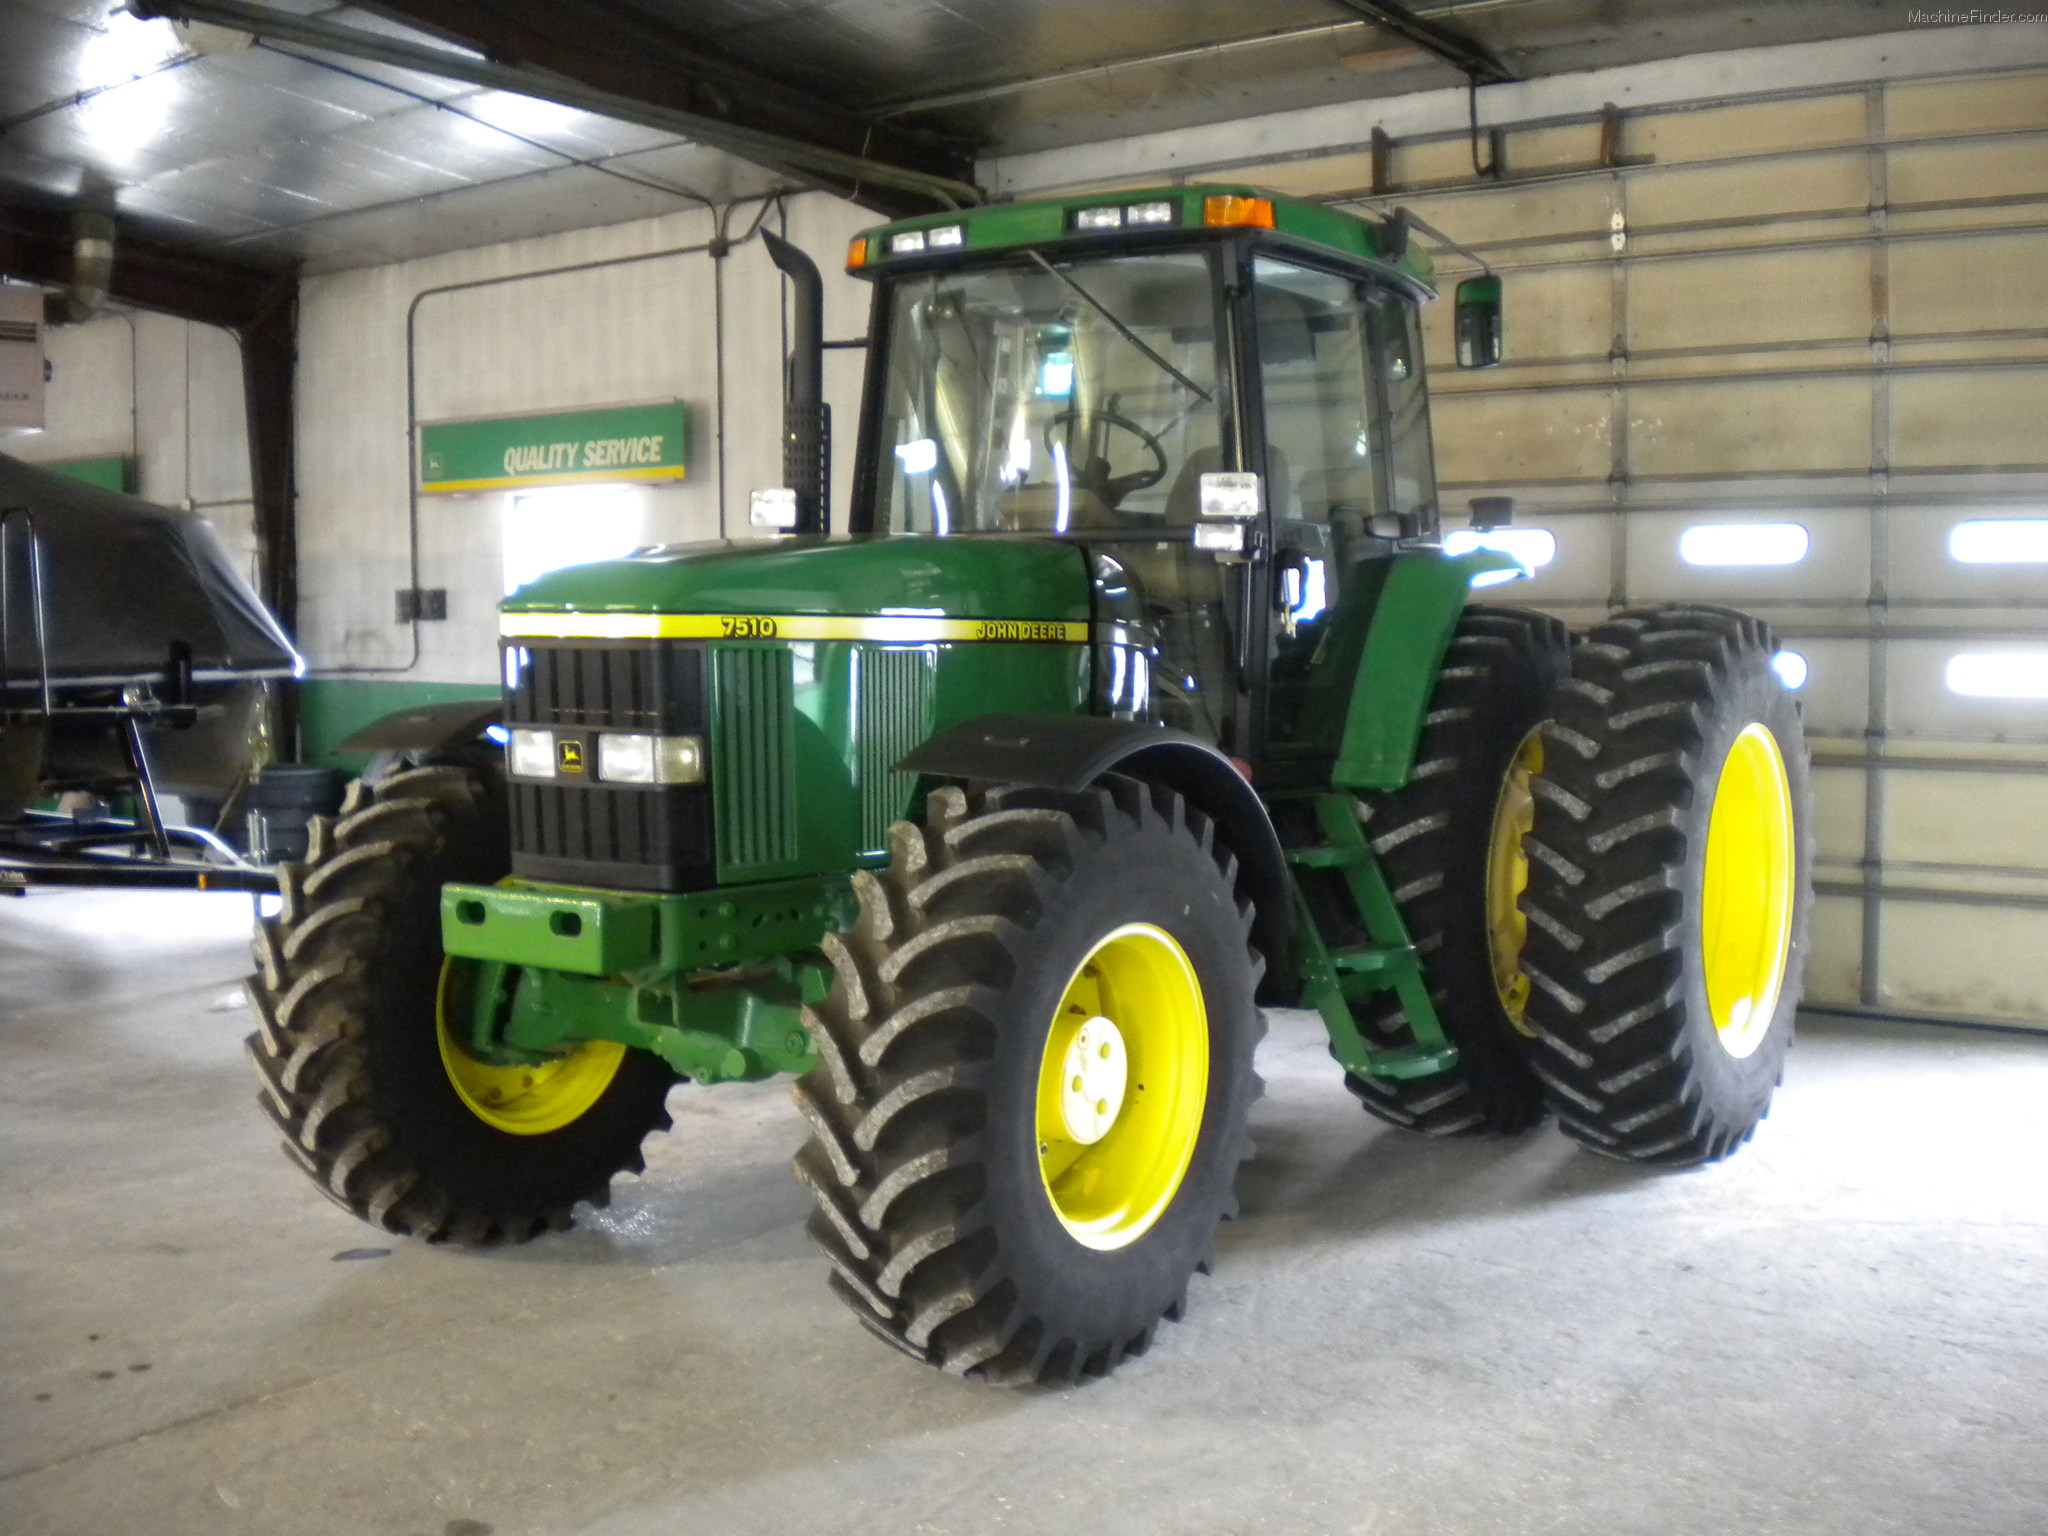 2002 John Deere 7510 Tractors - Row Crop (+100hp) - John ...